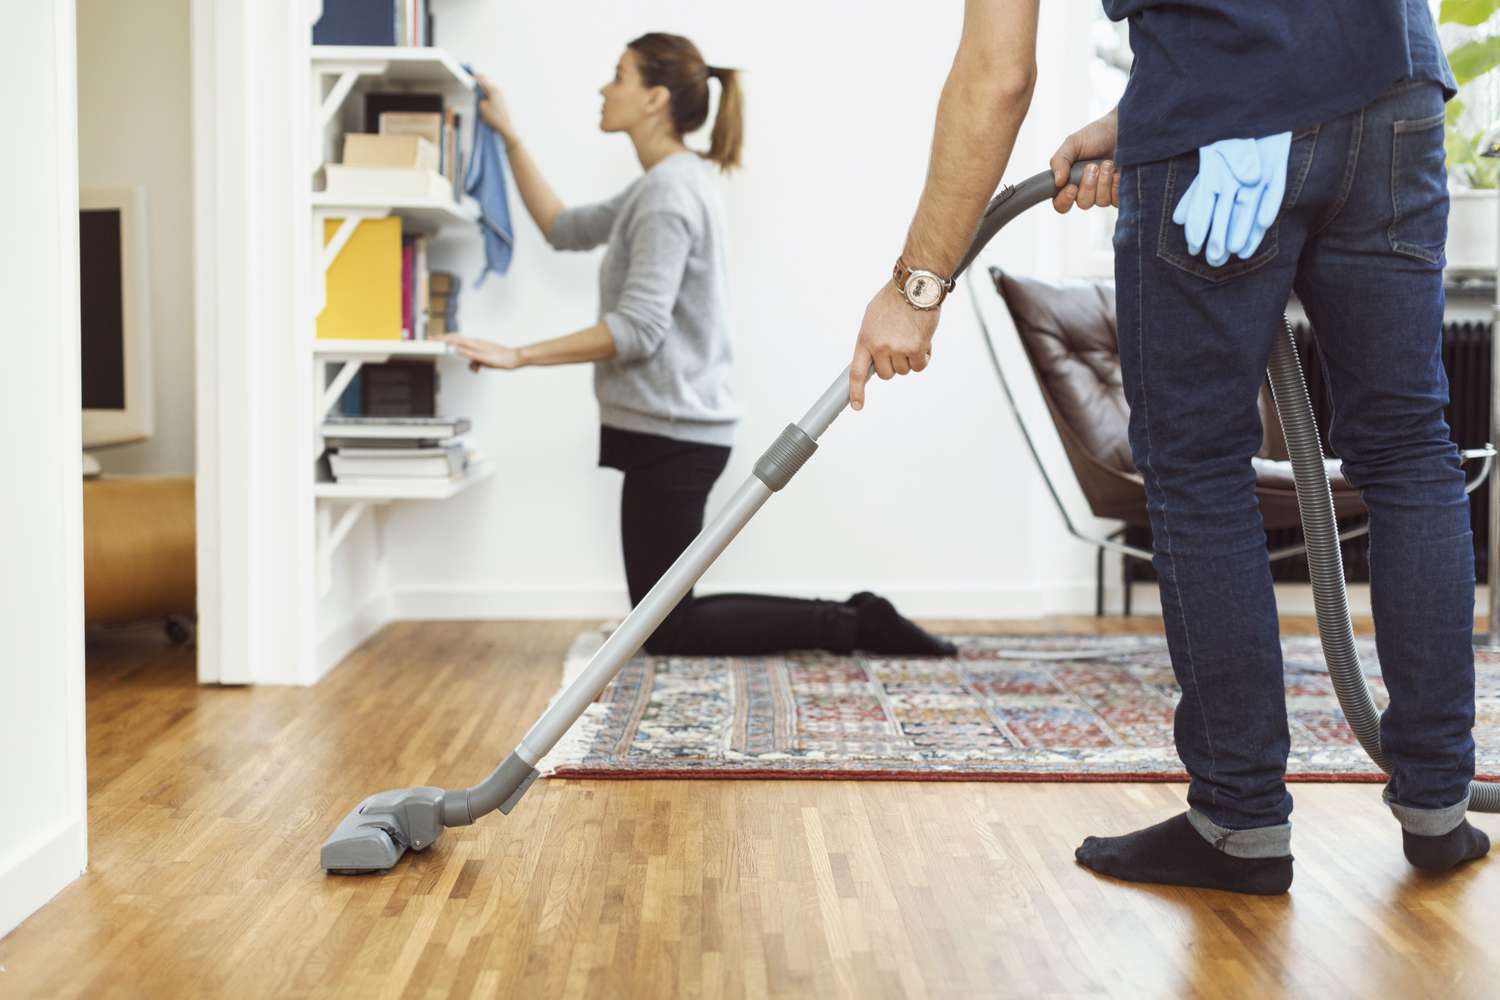 Le donne tradizionalmente si sobbarcano un carico di lavori domestici maggiore rispetto agli uomini